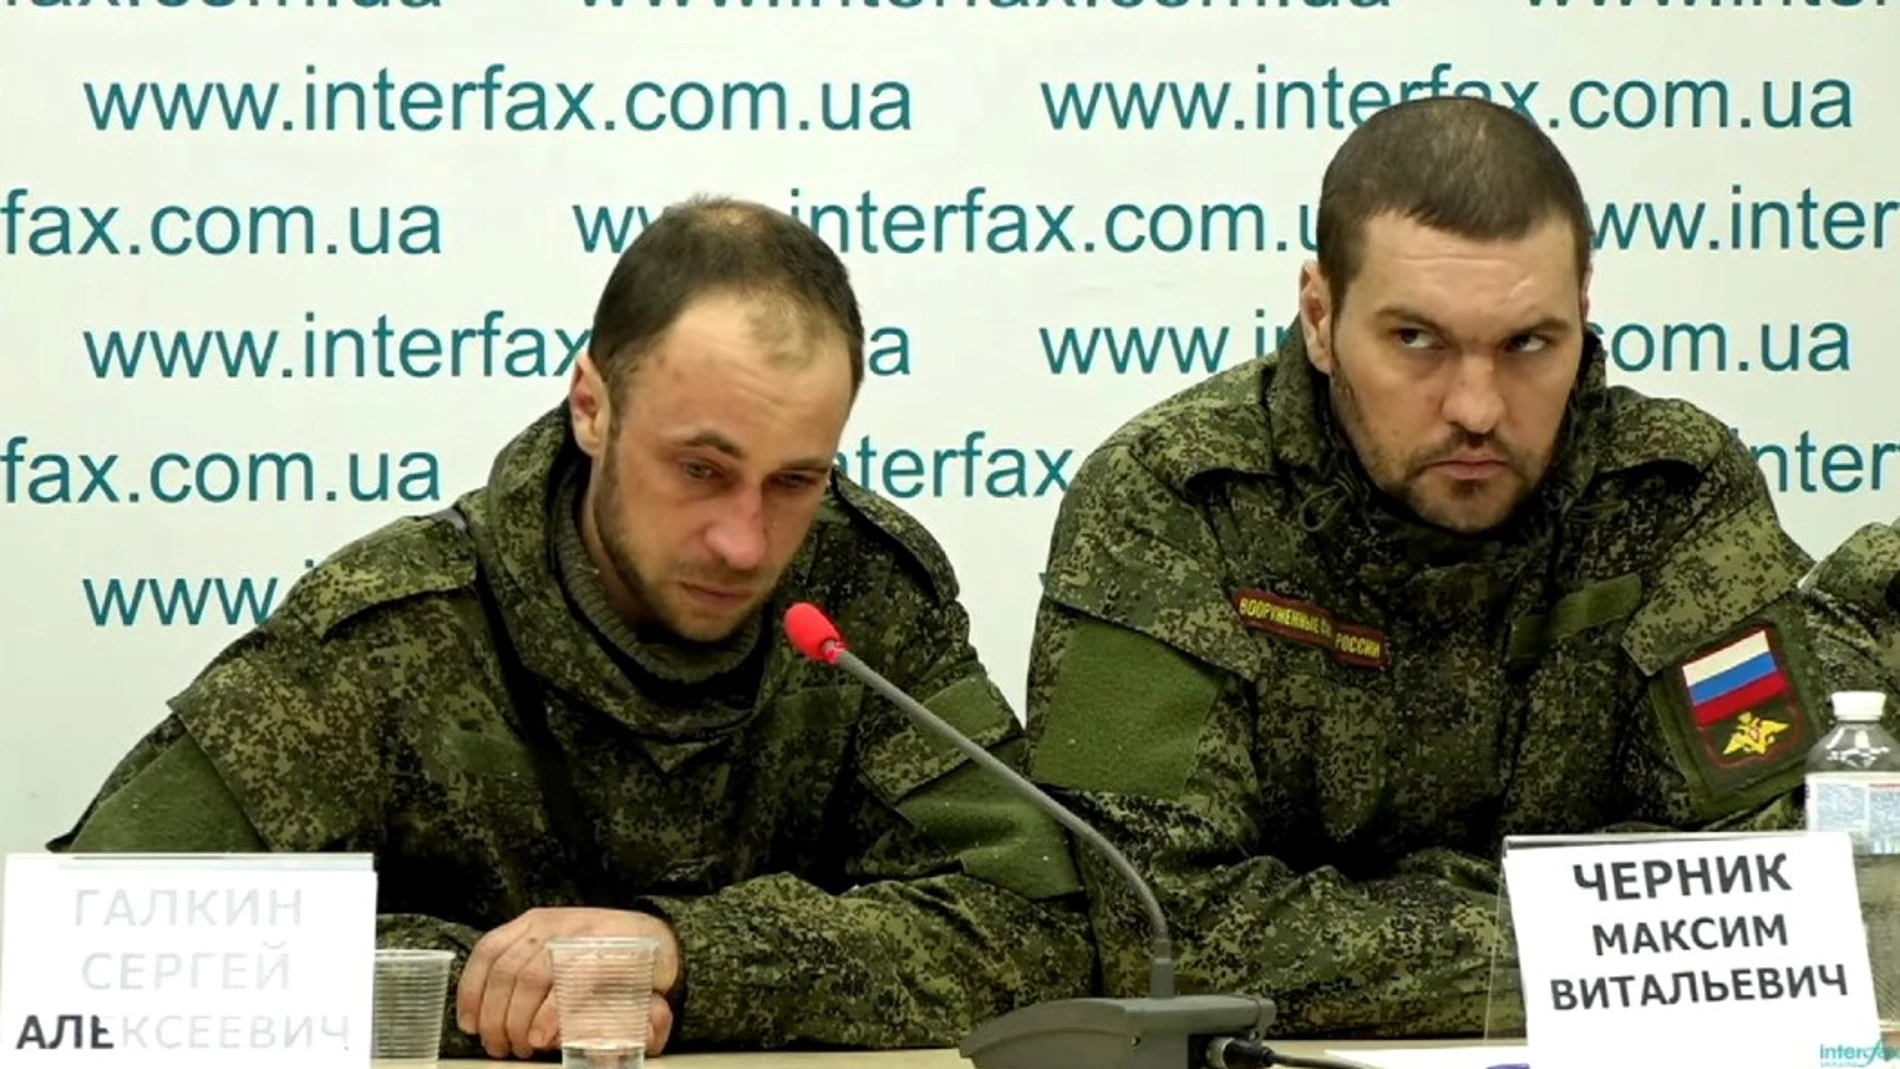 El soldado ruso Galkin Serguéi Alekseevich confiesa entre lágrimas estar arrepentido por la invasión de Ucrania